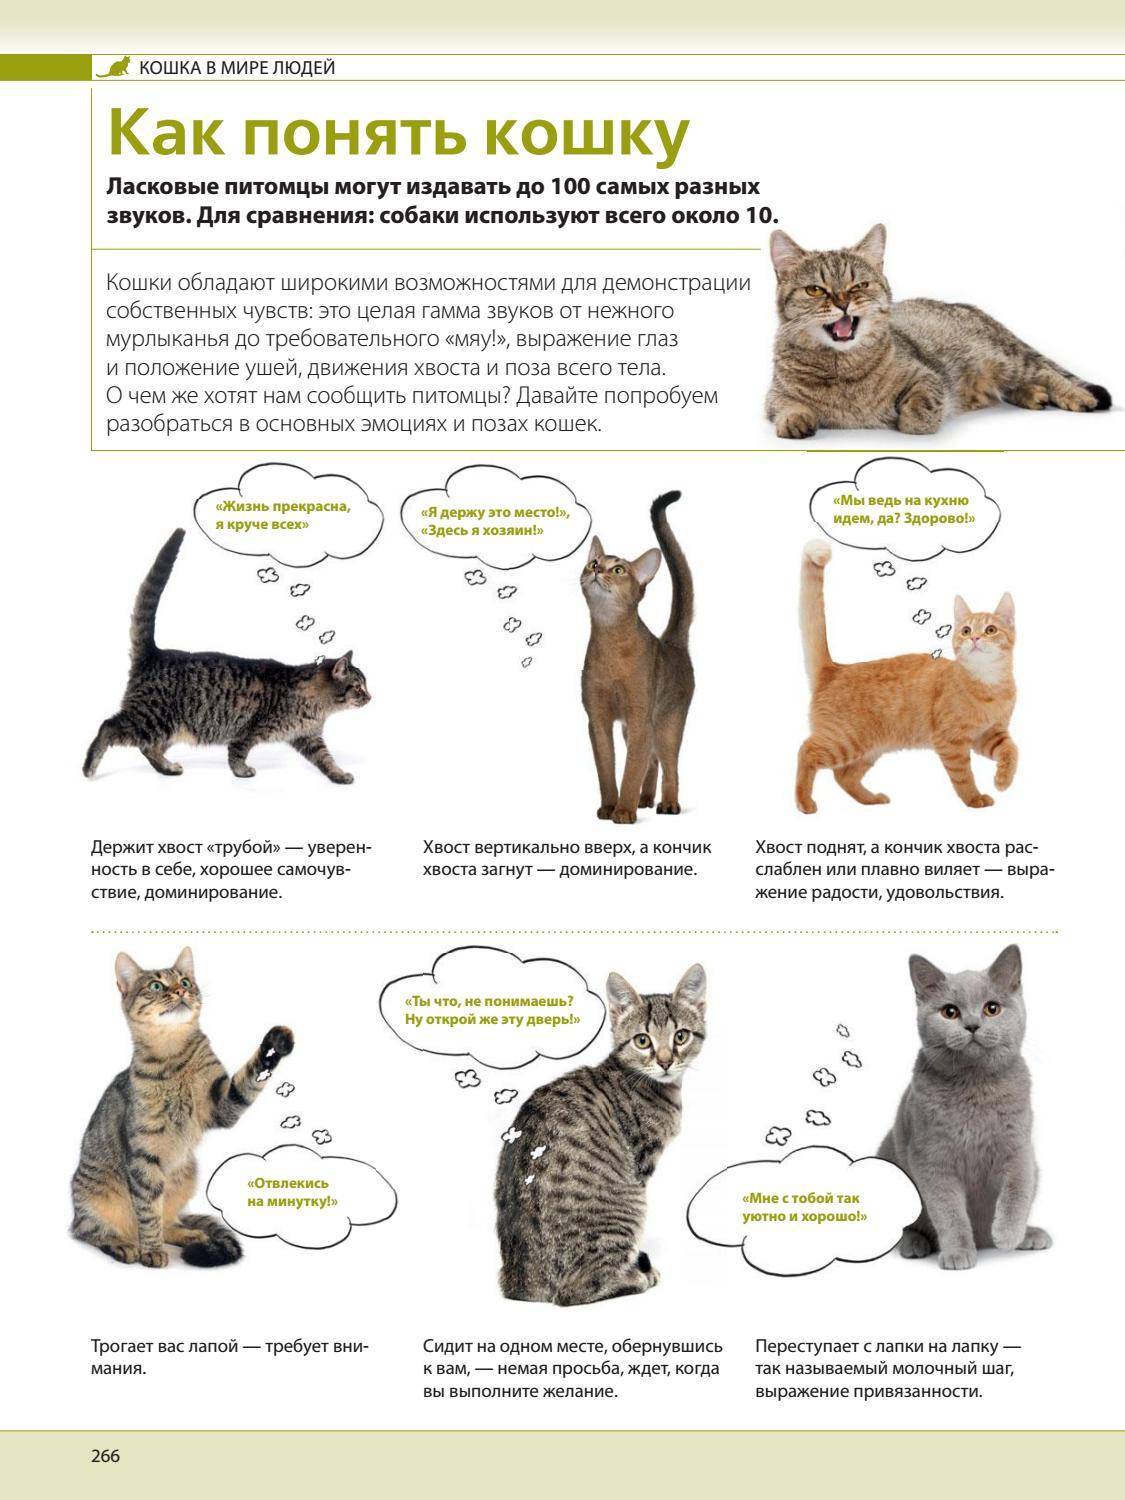 Как разговаривать с кошками и котами: жесты, слова, взаимопонимание между хозяином и питомцем